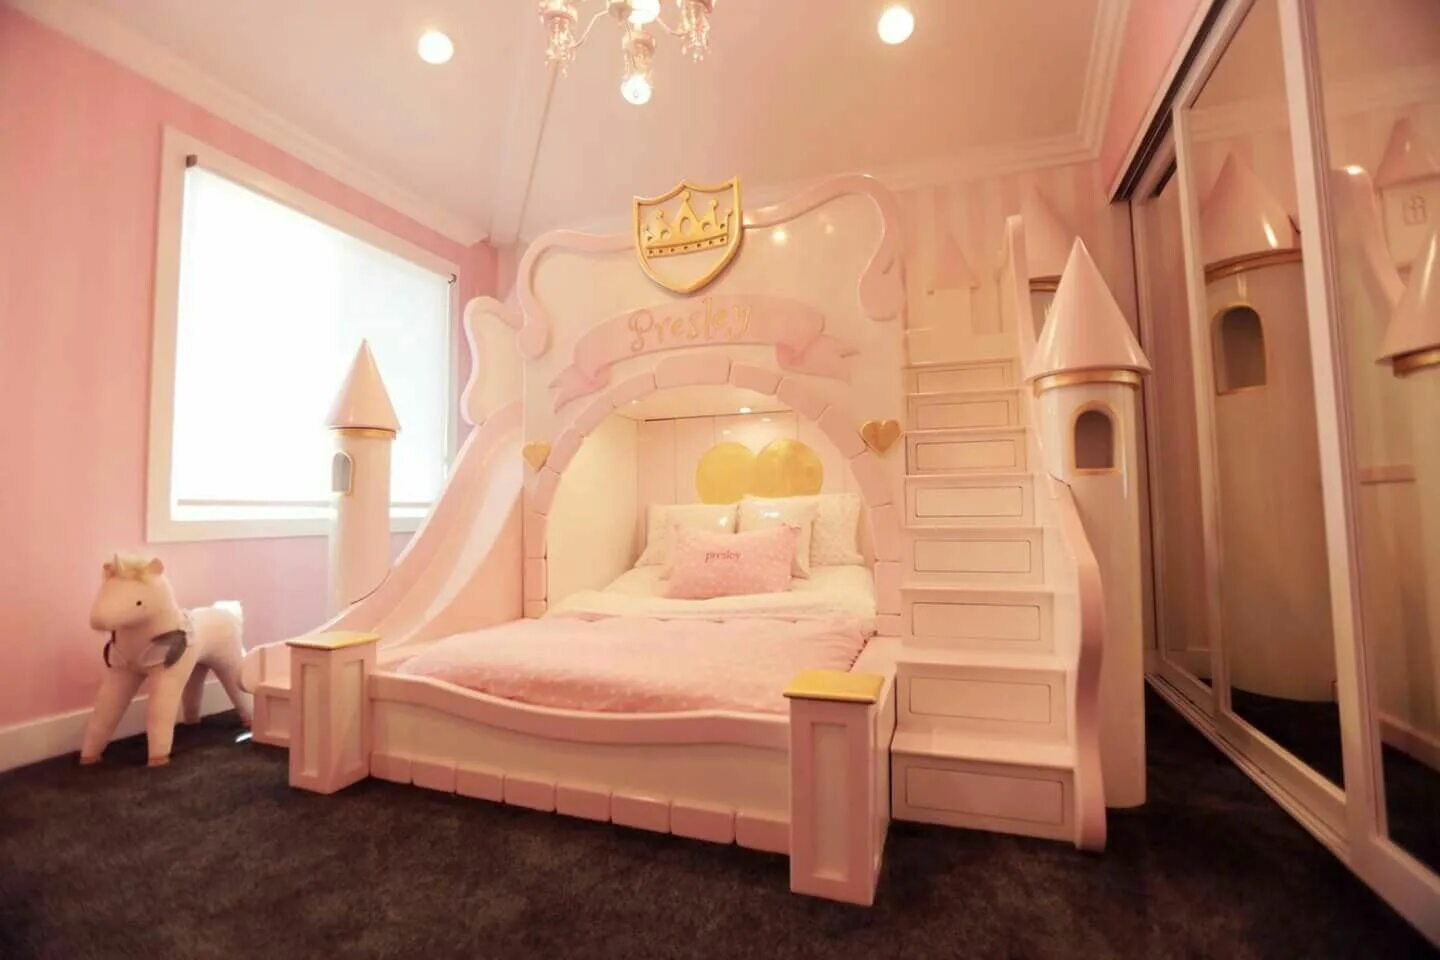 Кровать 7 дом. Princess Castle кровать. Самые красивые кровати для девочек. Необычные детские кровати для девочек. Комната принцессы.